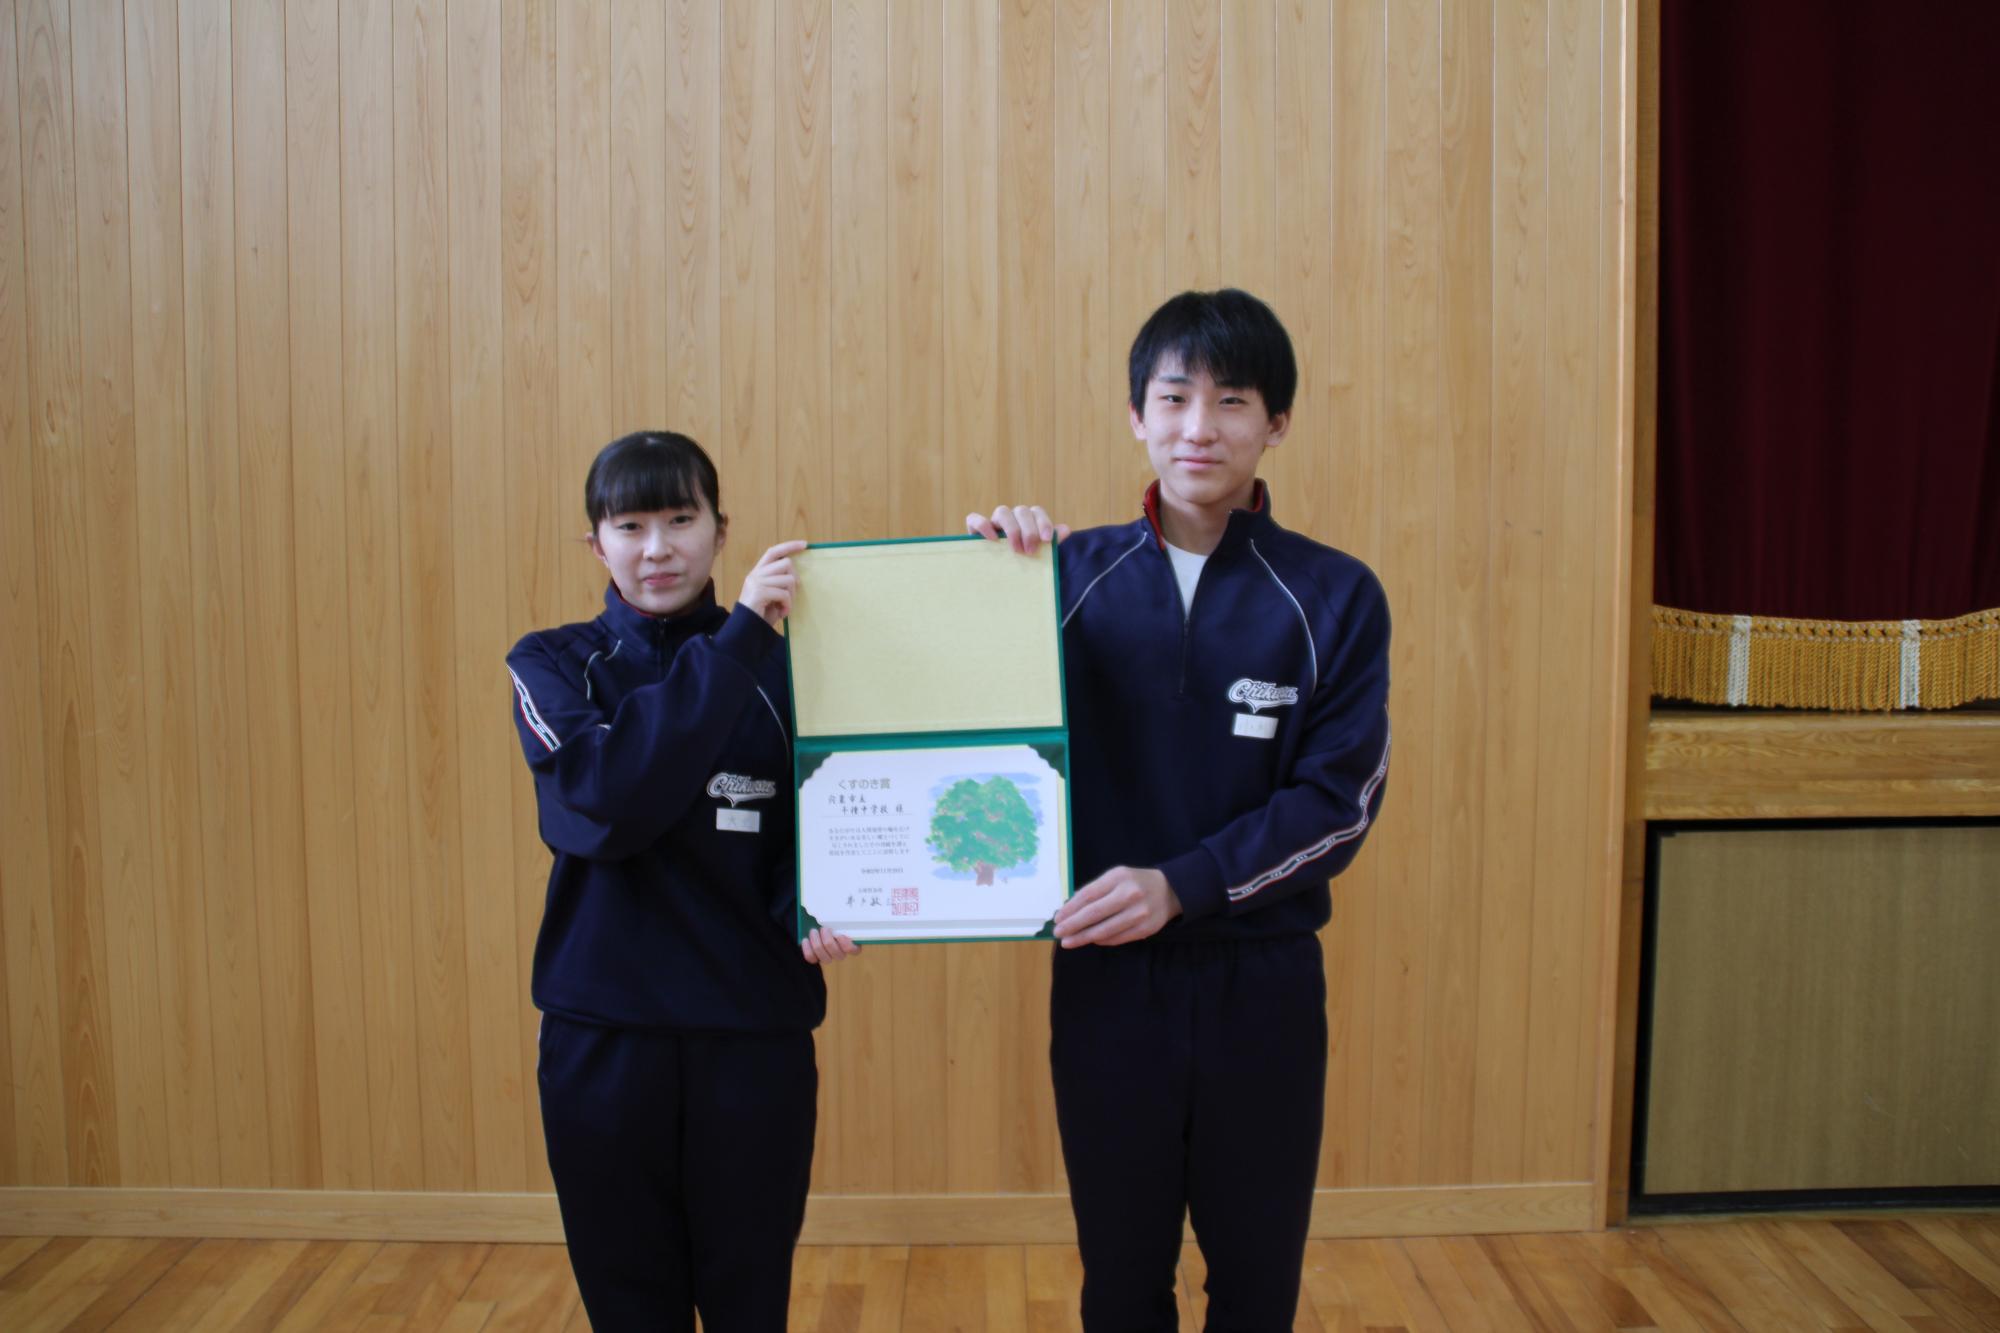 賞状を持つ生徒会長と副会長の写真